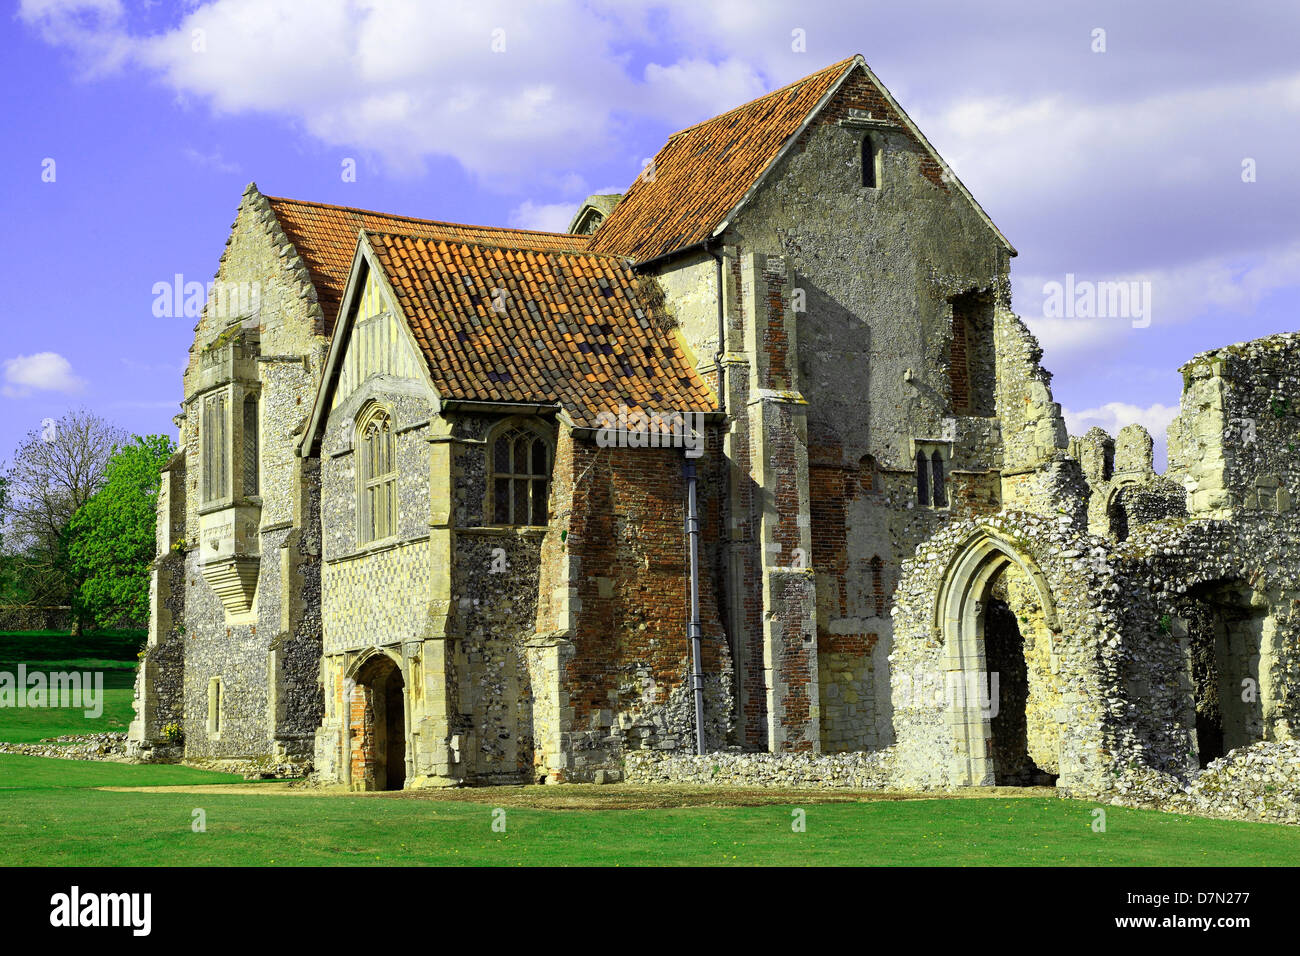 Castle Acre Priory, Norfolk, antes de moradas, Inglaterra, Reino Unido, monasterio medieval cluniacense, prioratos en inglés Foto de stock